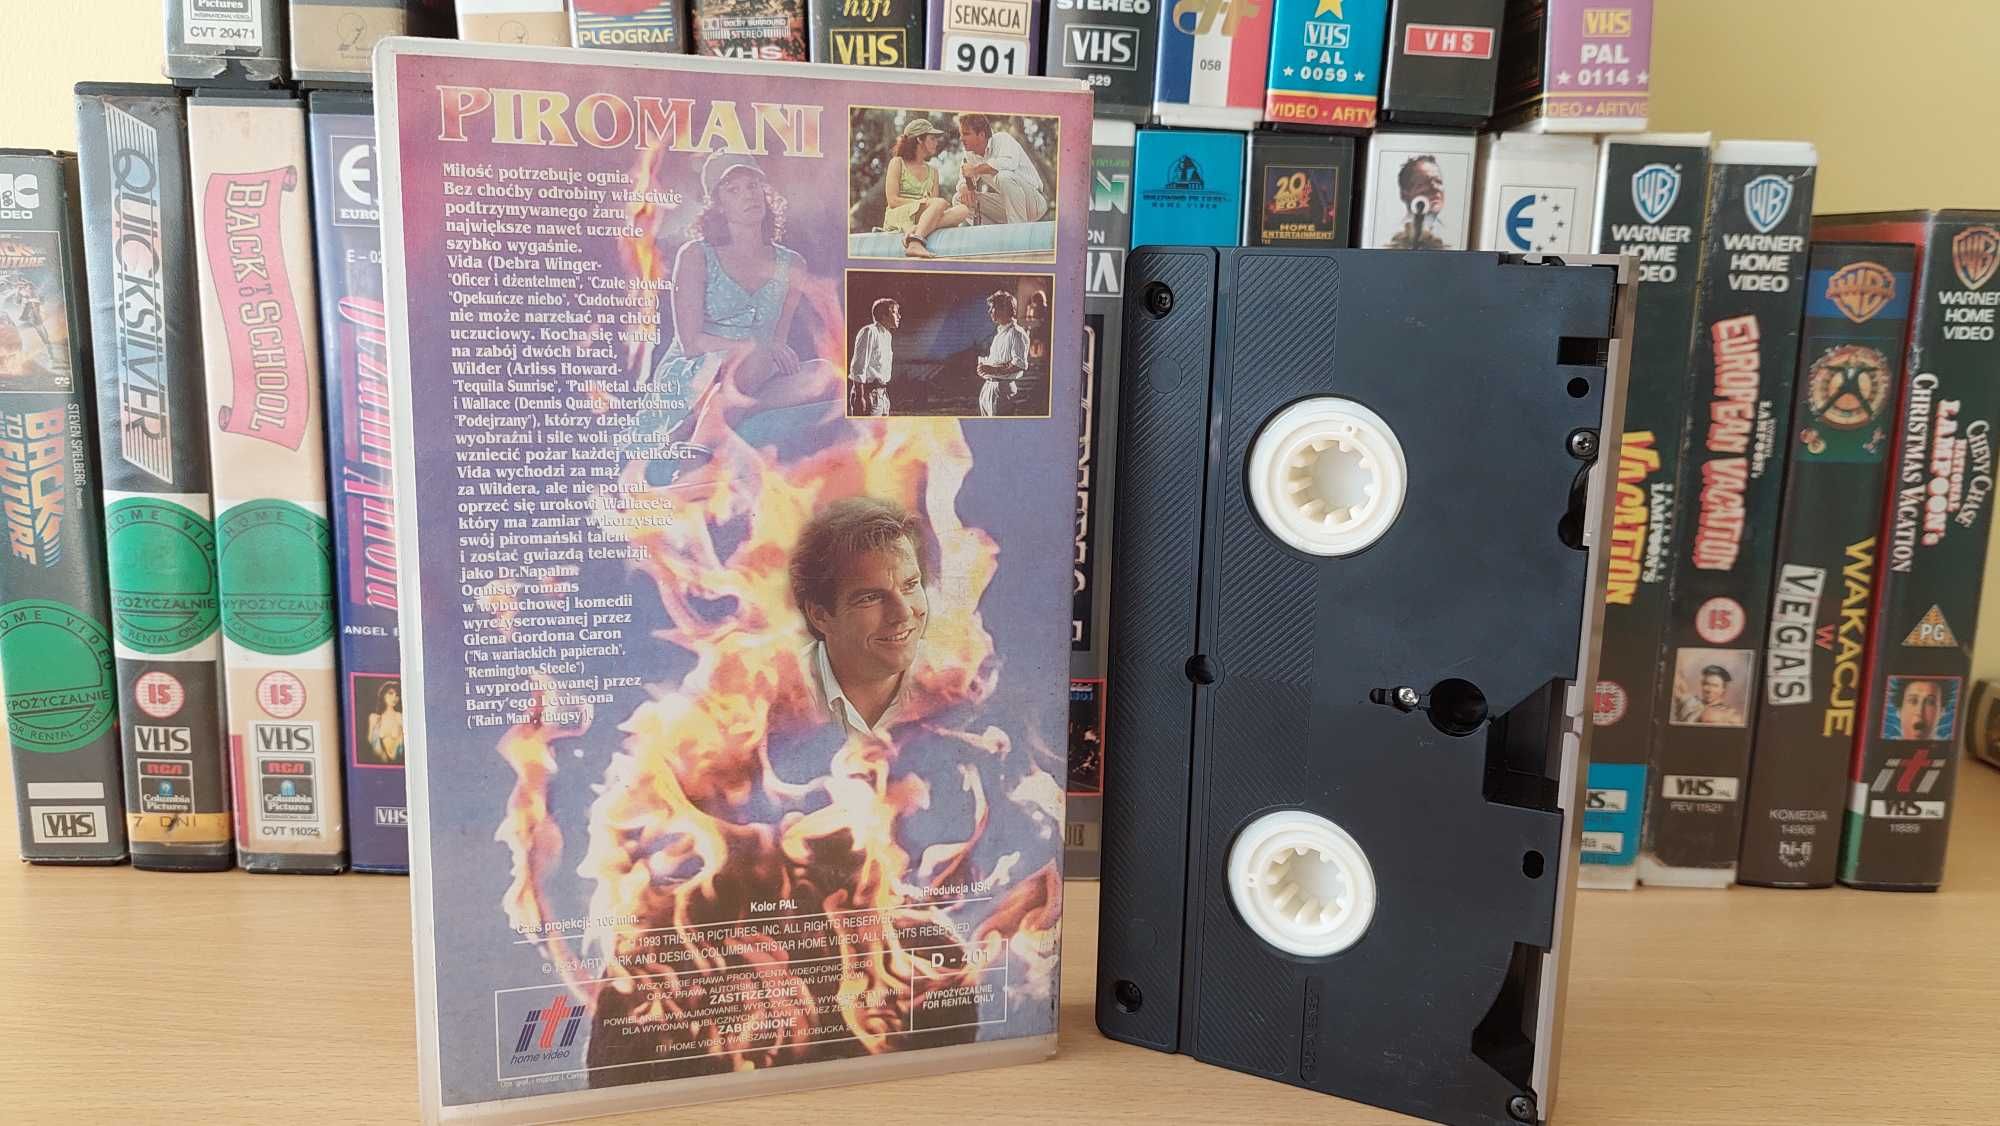 Piromani (Wilder Napalm) - VHS